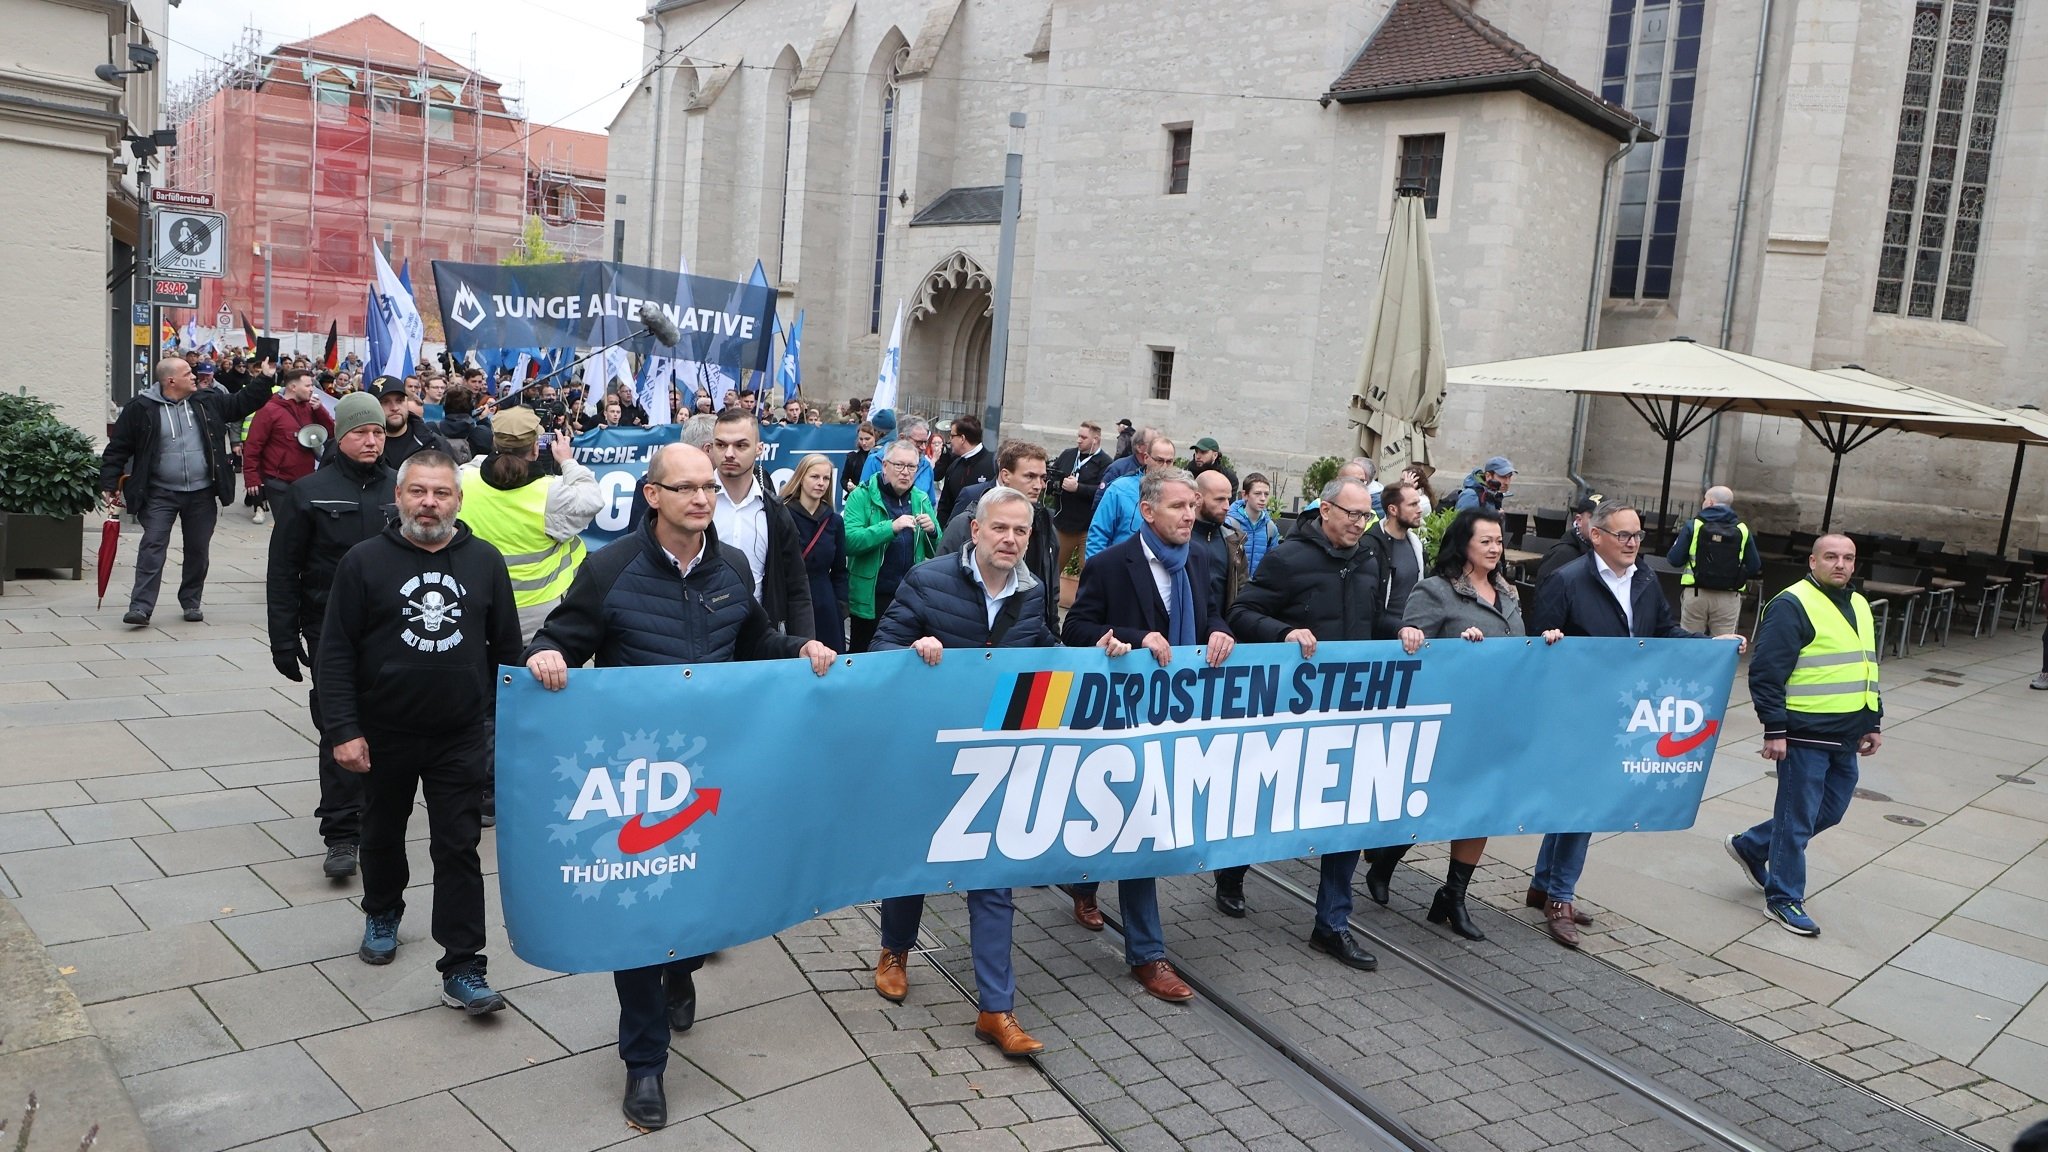 AfD-Demonstration "Der Osten steht zusammen" in Thüringen